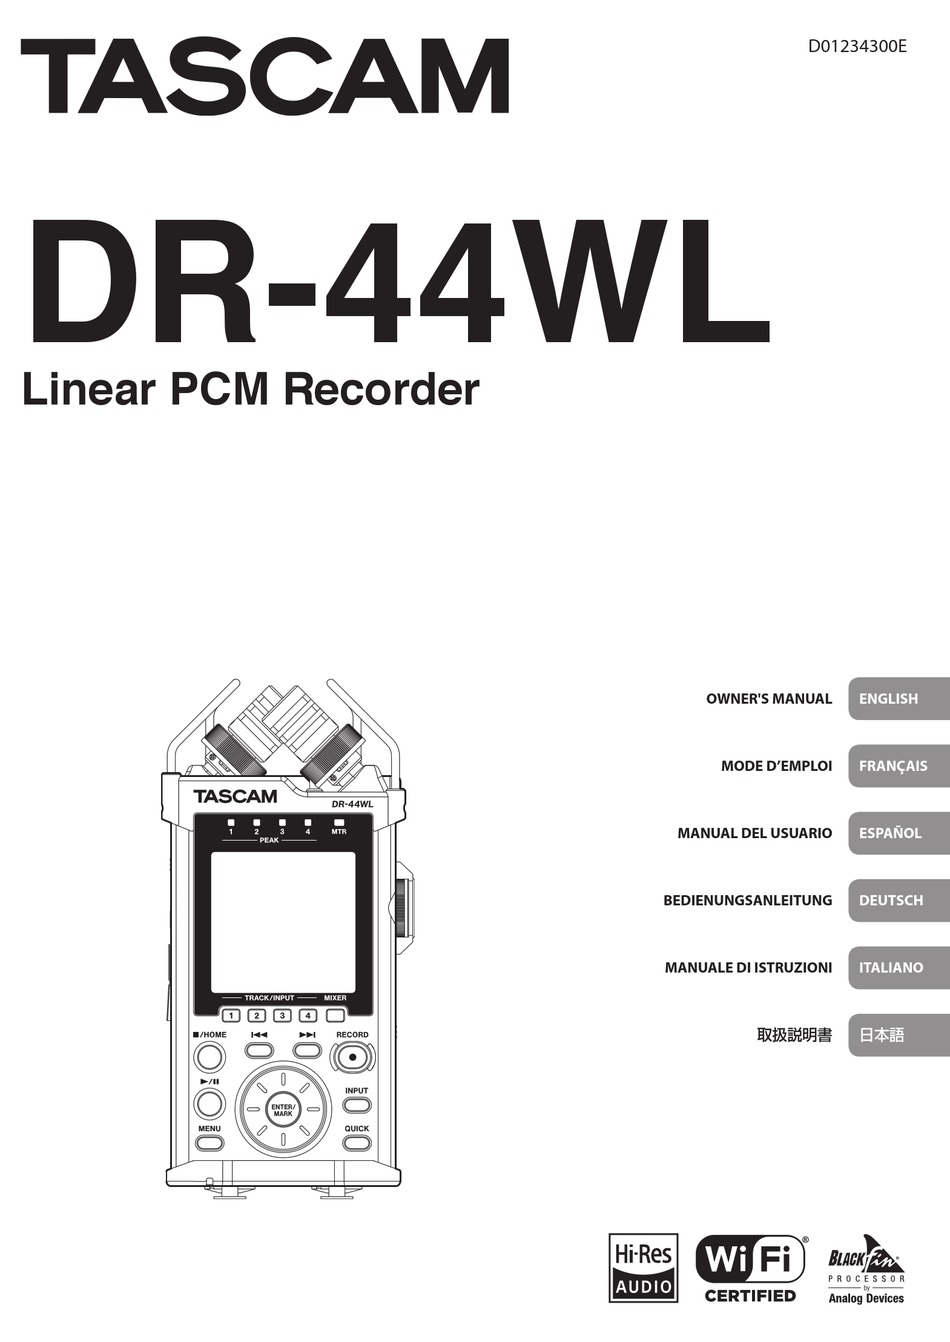 TASCAM DR-44WL OWNER'S MANUAL Pdf Download | ManualsLib